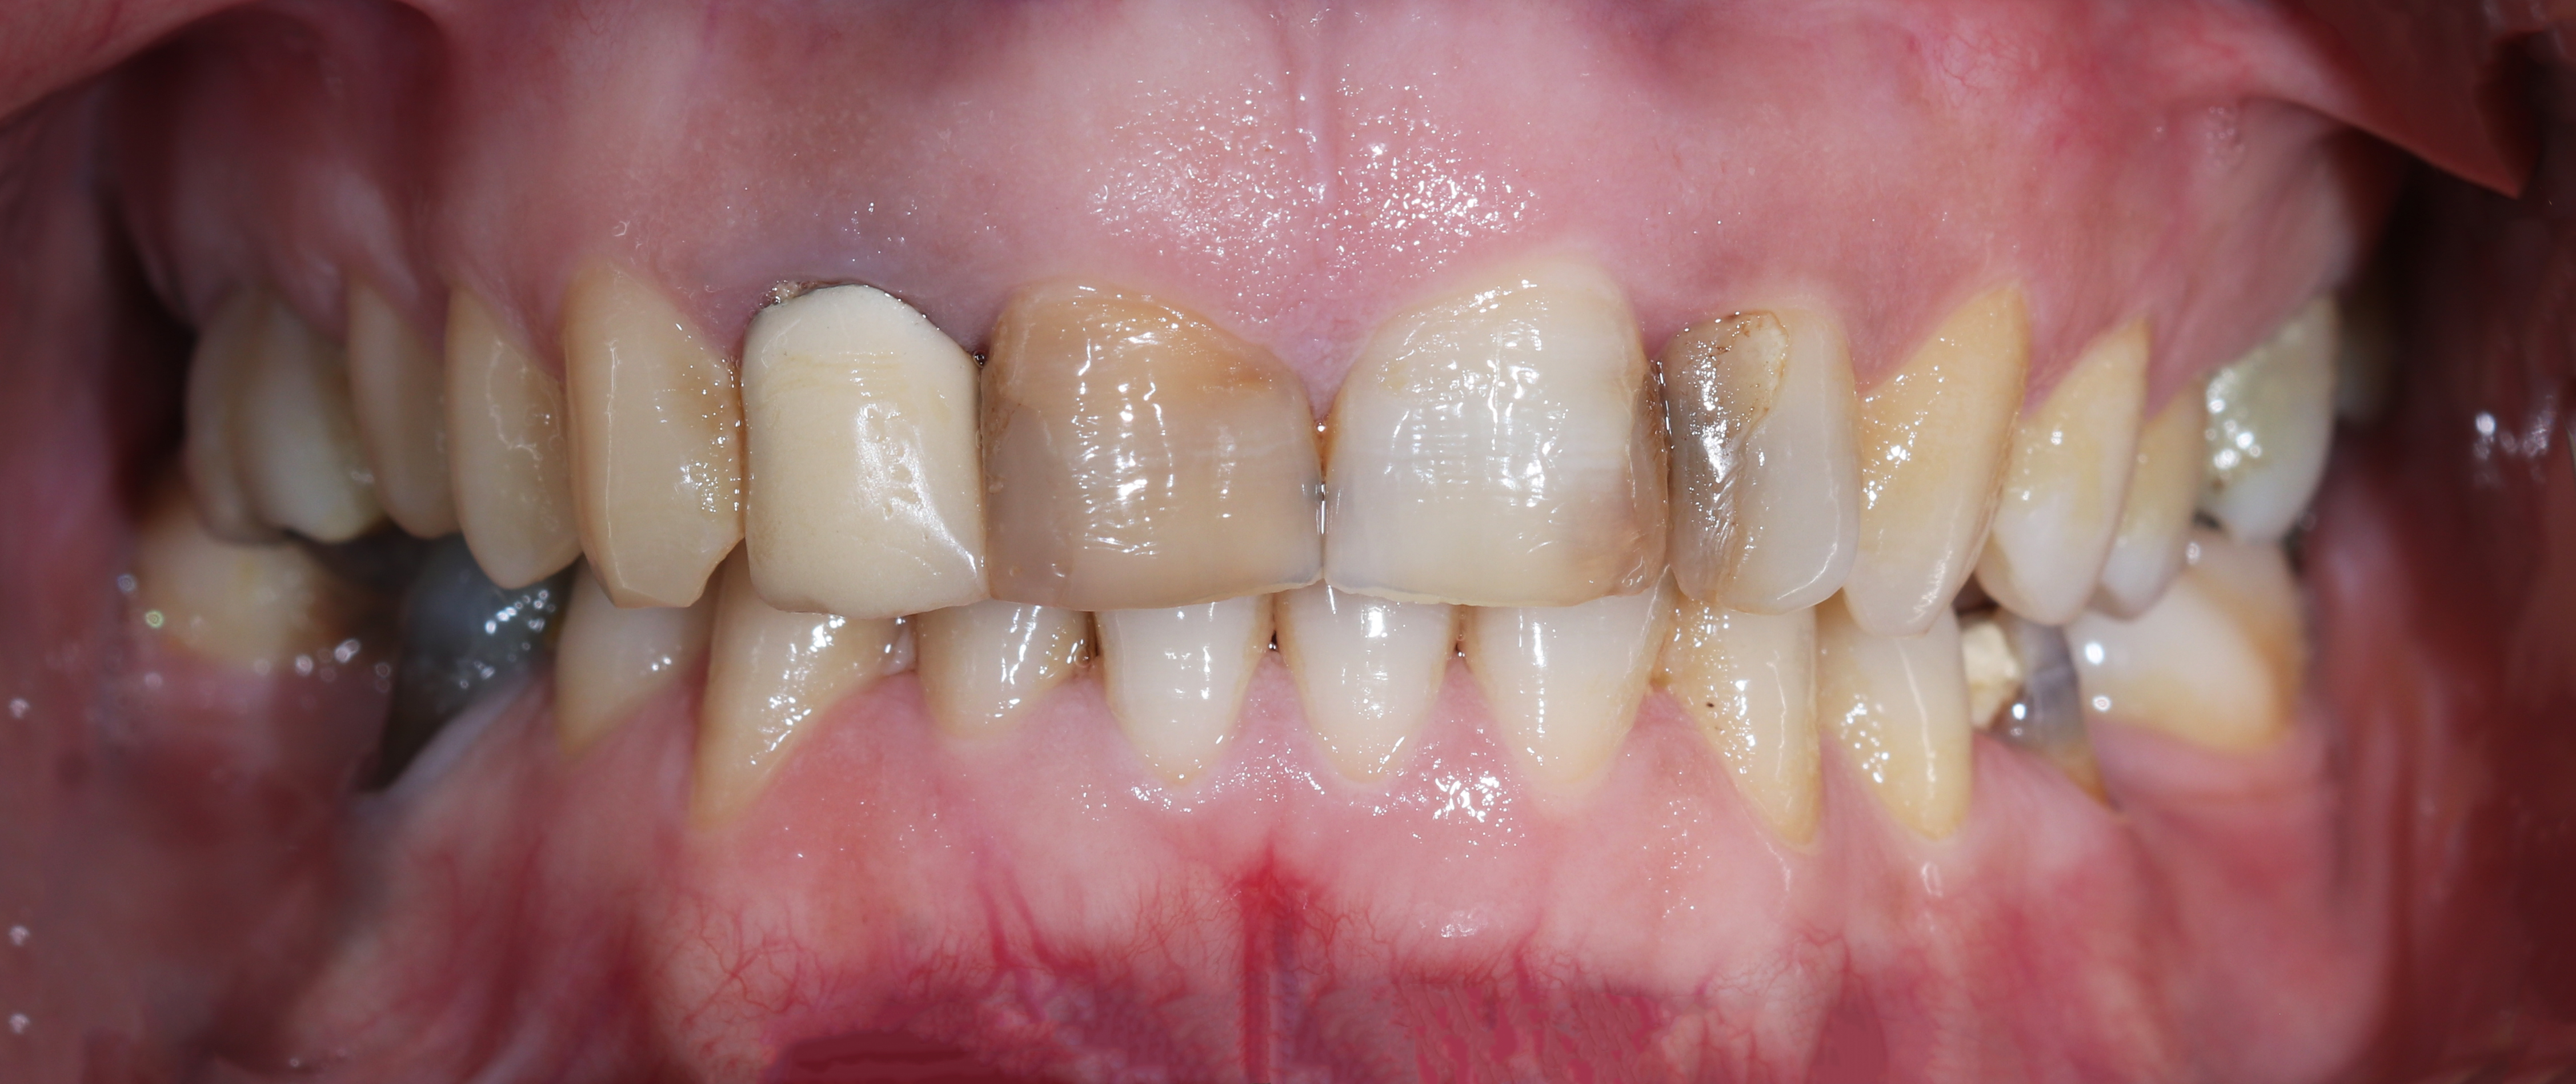 Αρχική κατάσταση - Πρόσθια άποψη με τα δόντια σε σύγκλειση